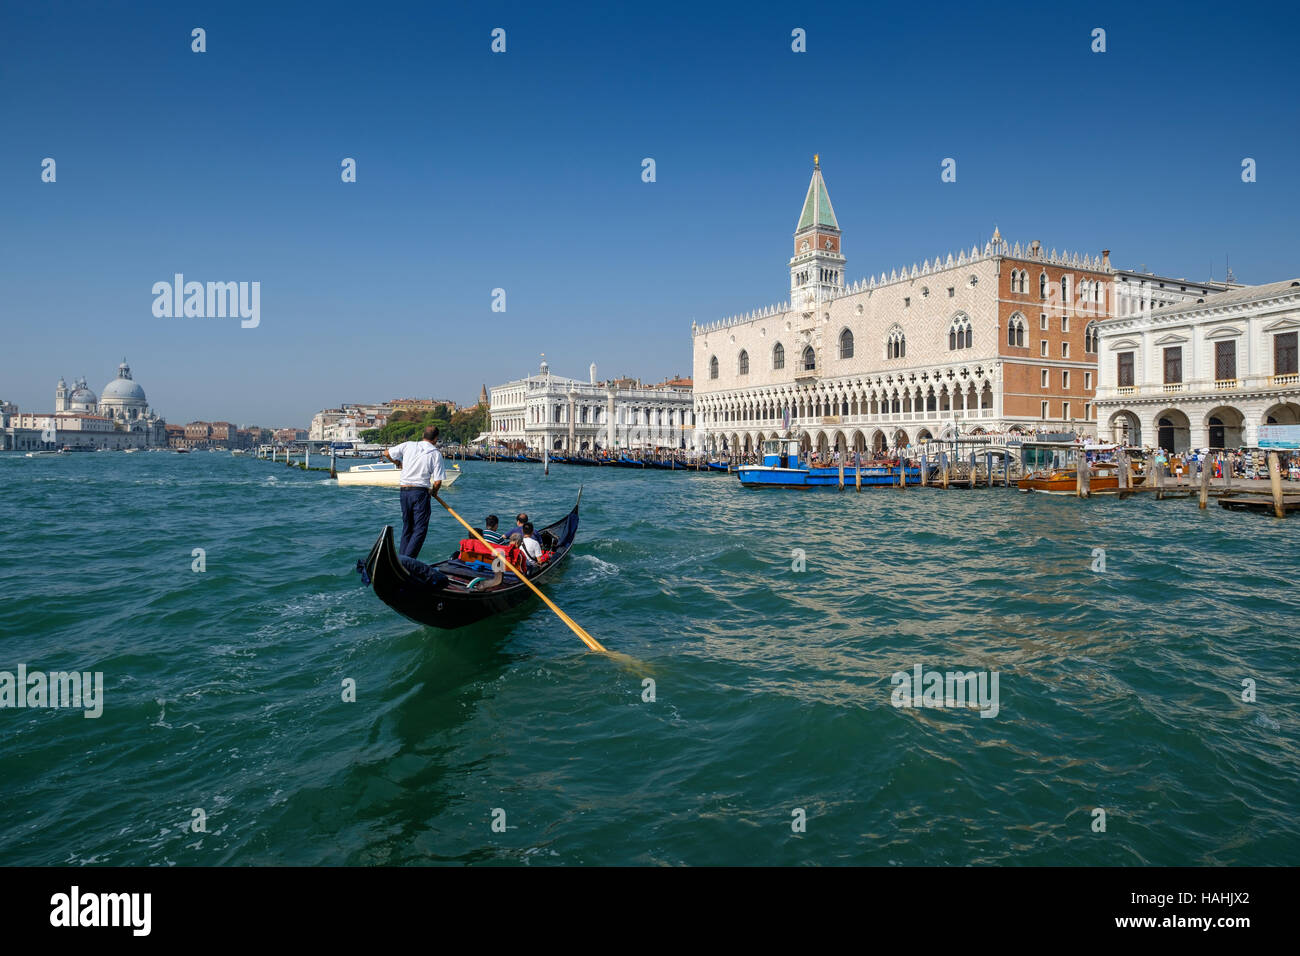 Il Palazzo del Doge e ingresso di Piazza San Marco, Piazza San Marco e dal Canal Grande con la gondola in primo piano. Venezia Italia Foto Stock